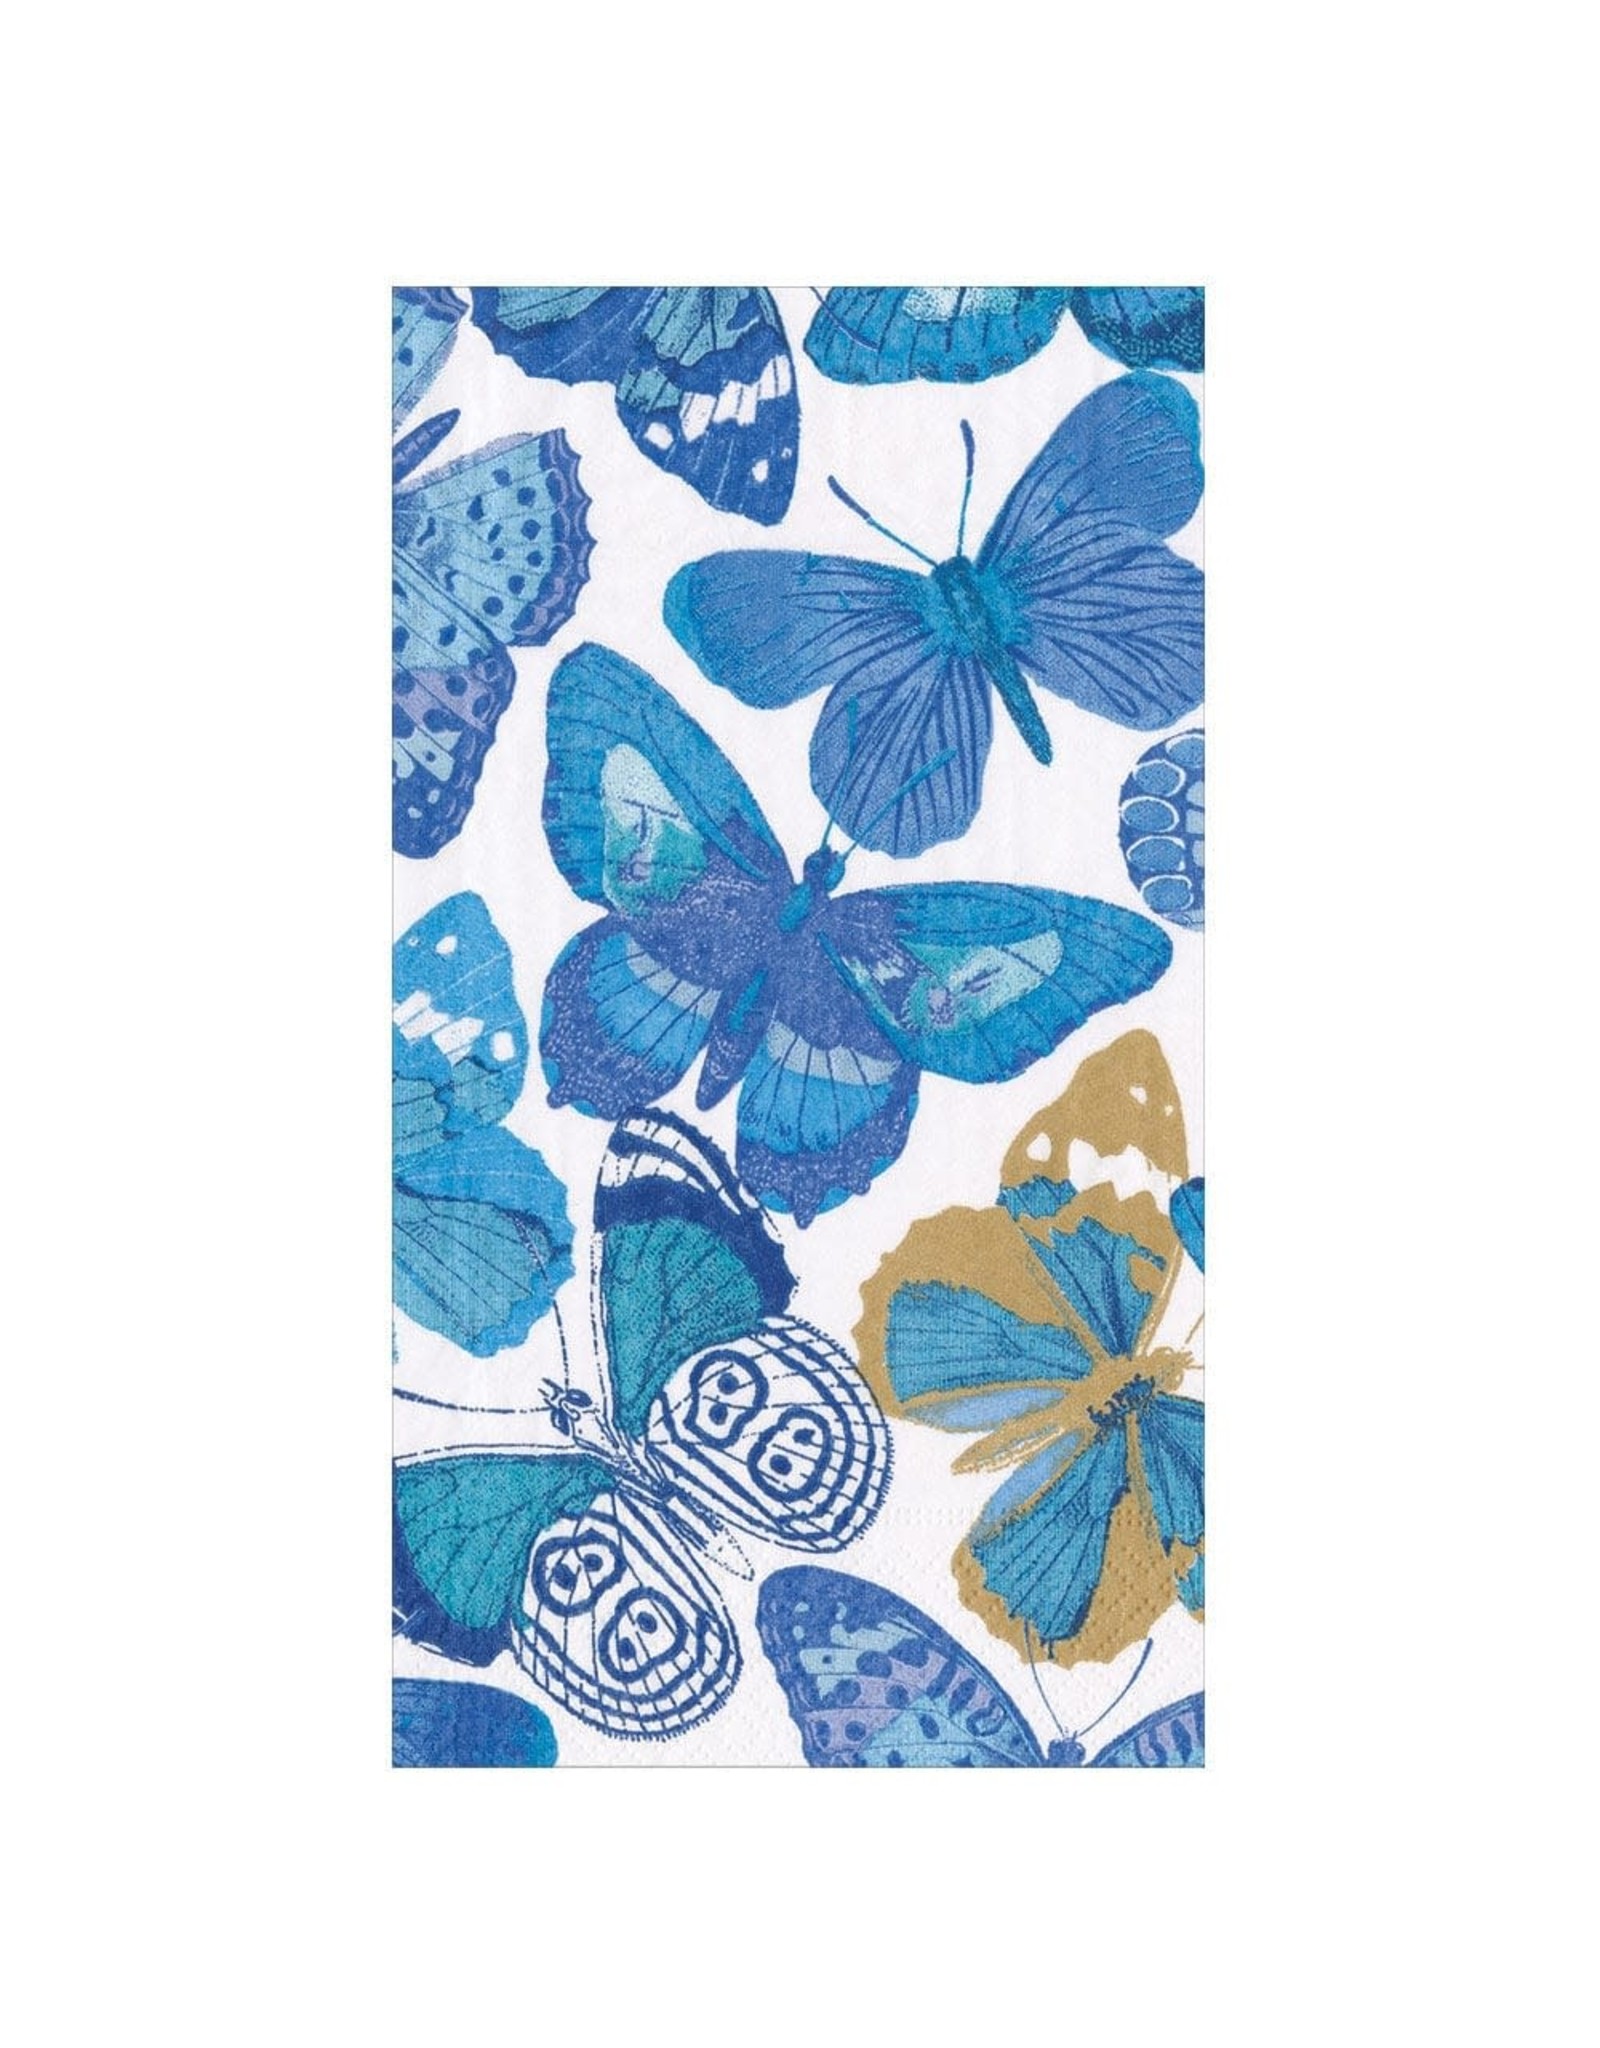 Caspari Paper Guest Towel Napkins 15pk Butterflies Blue